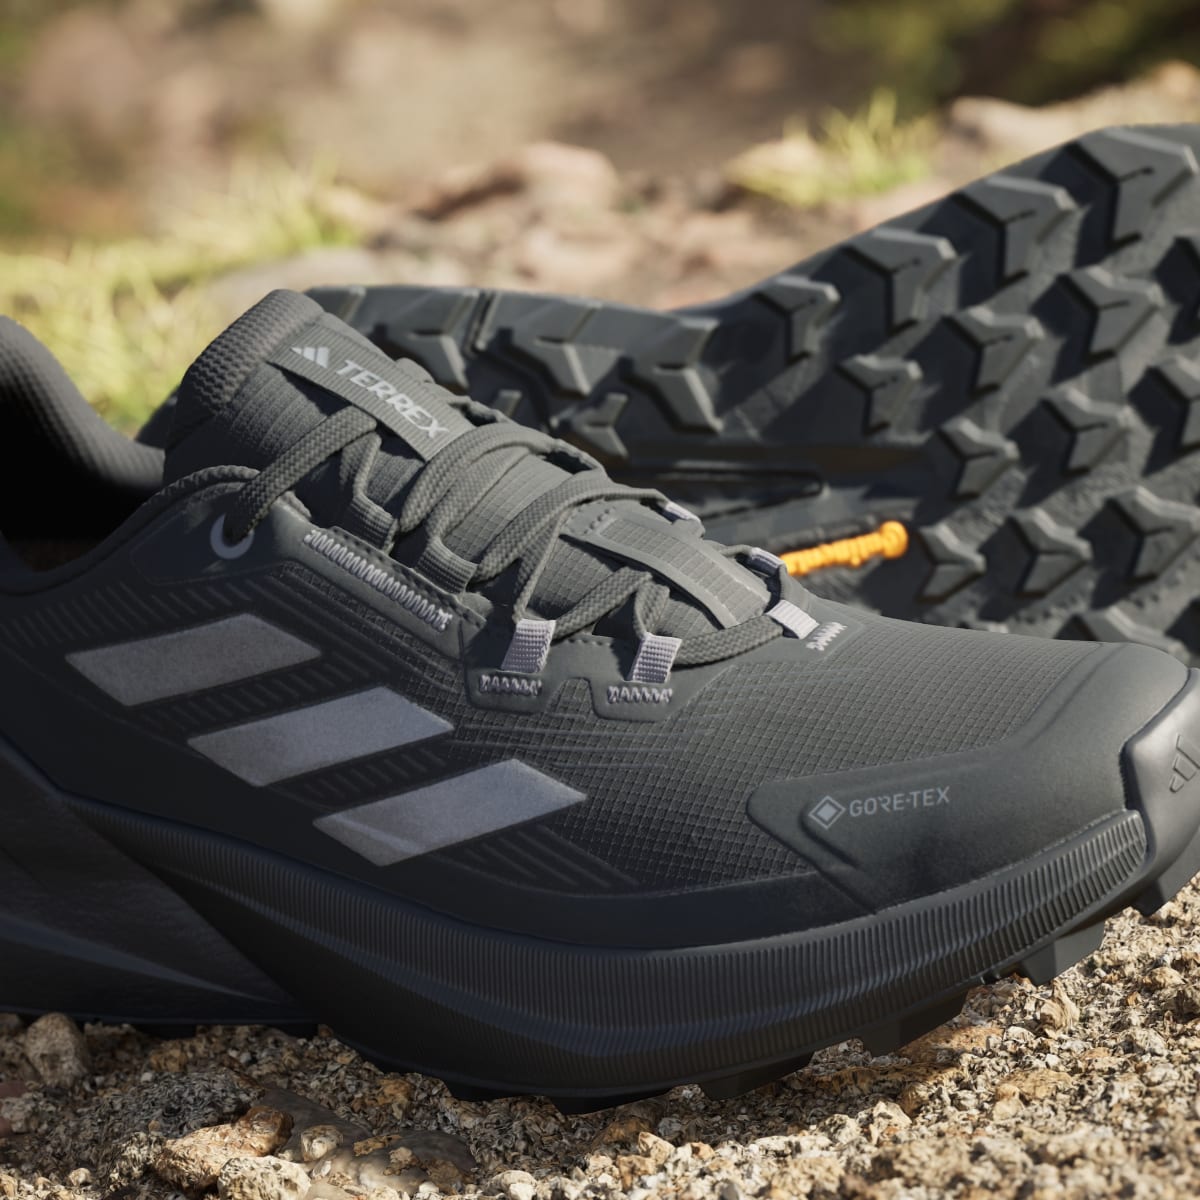 Adidas Sapatilhas de Caminhada GORE-TEX Trailmaker 2.0 TERREX. 9